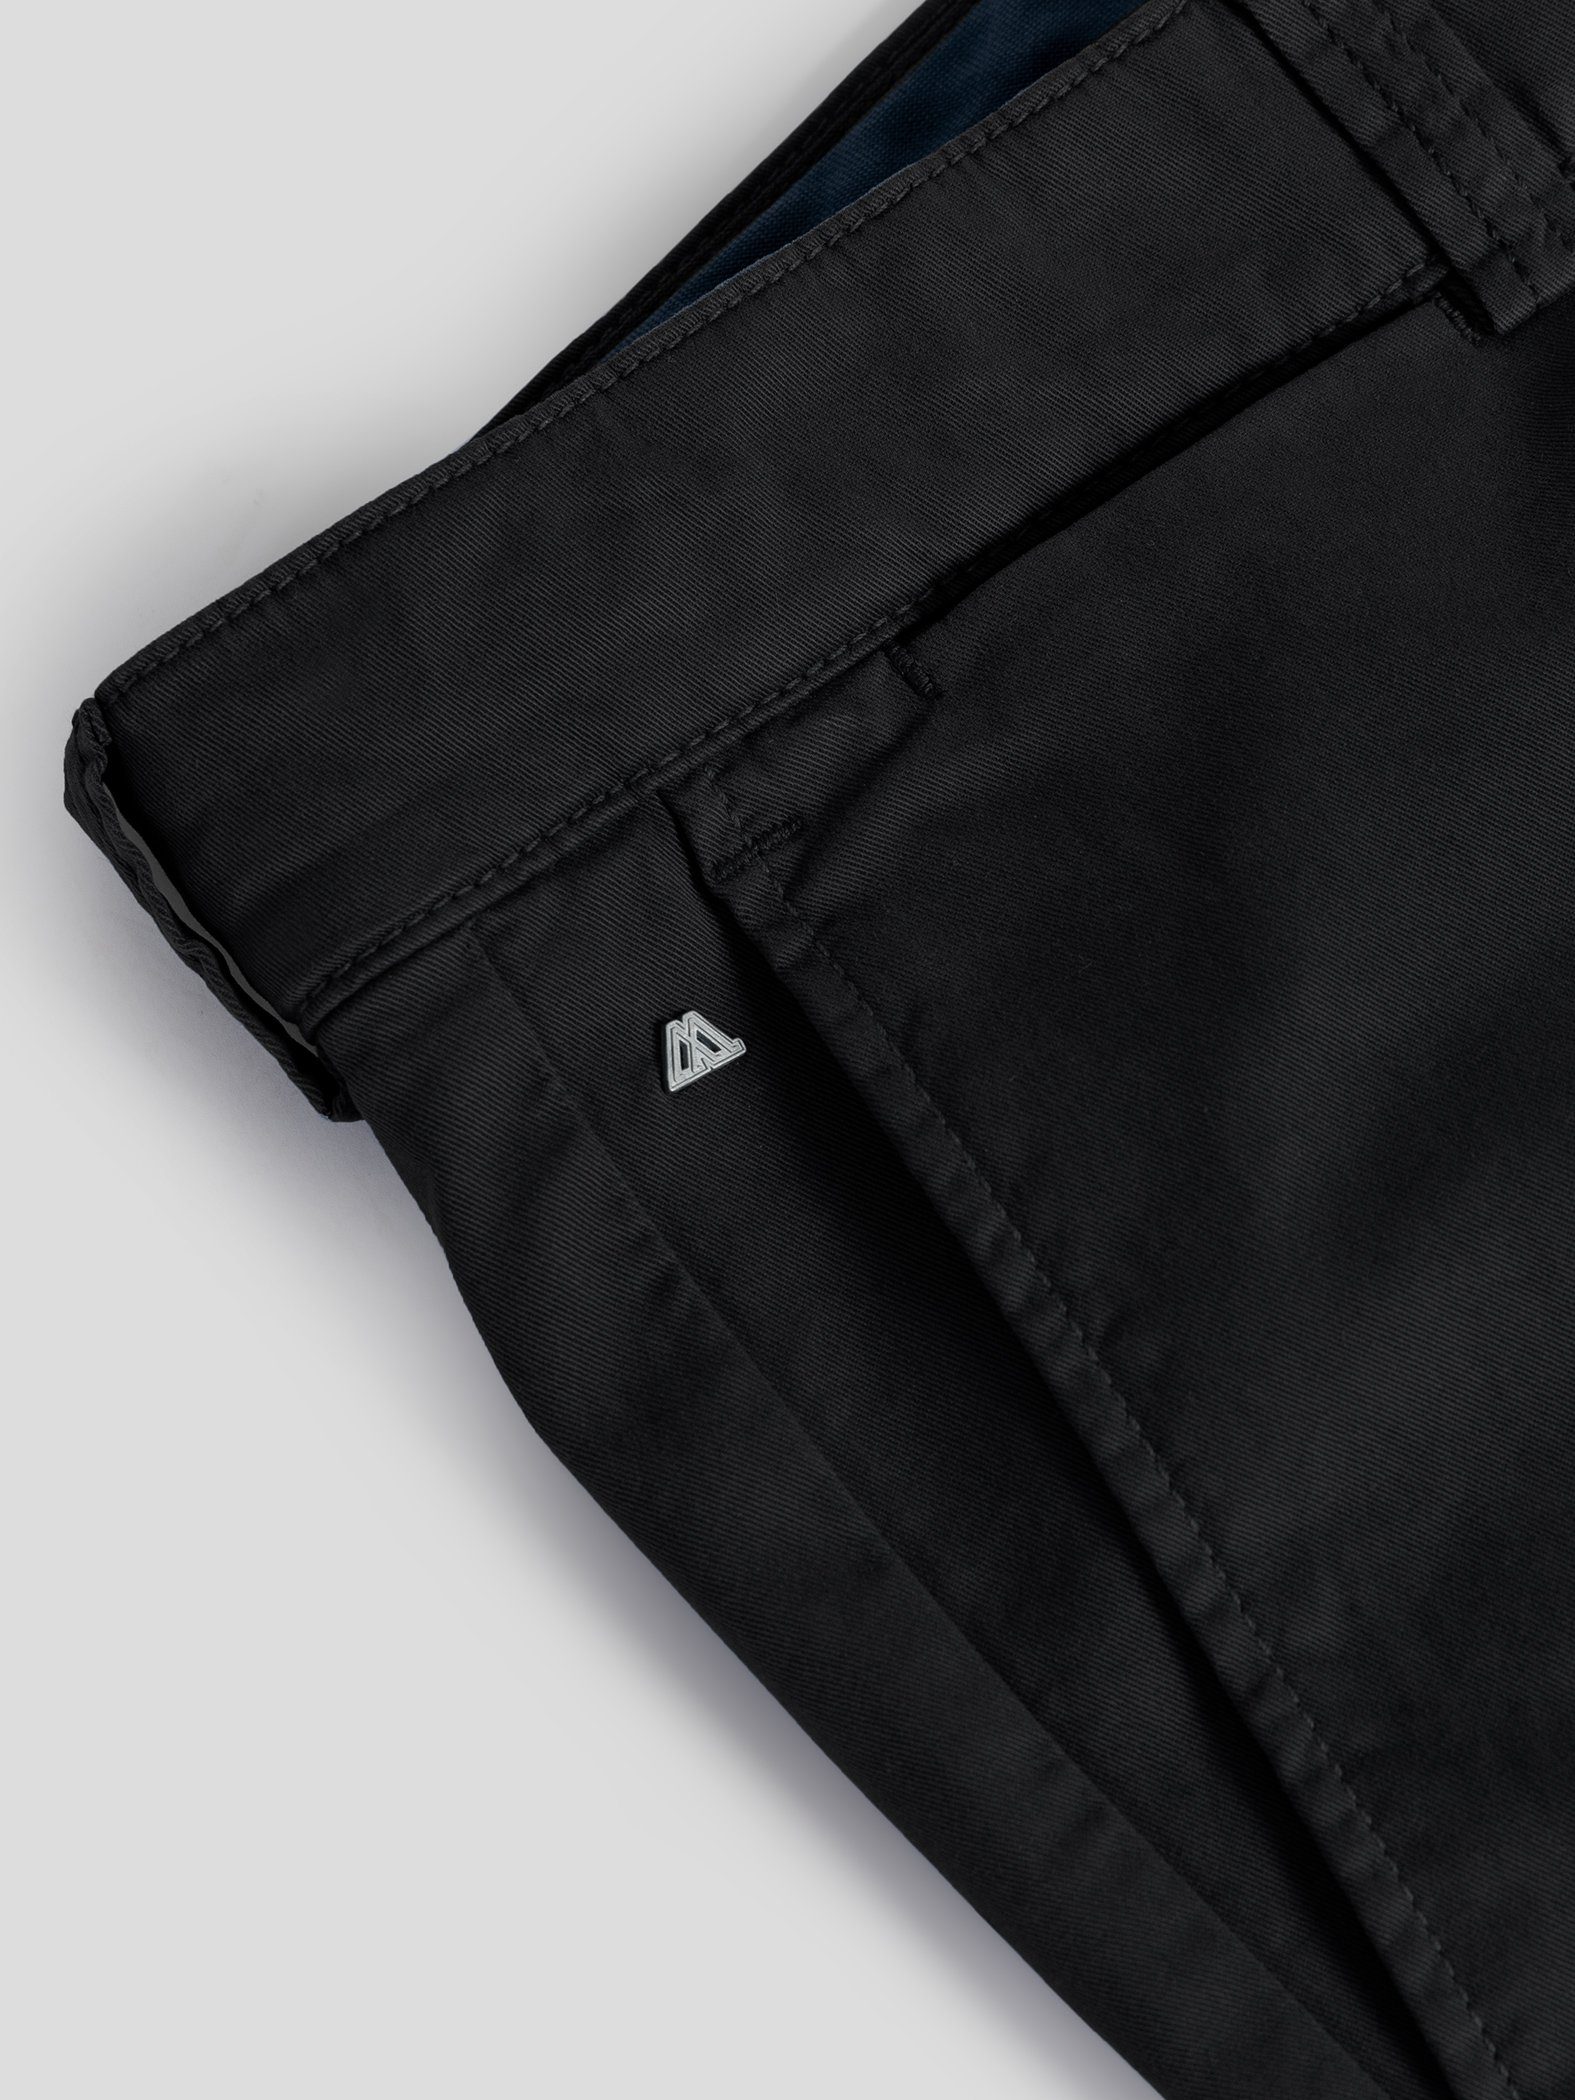 TwoMates Schwarz Farbauswahl, mit Bund, elastischem Shorts Shorts GOTS-zertifiziert